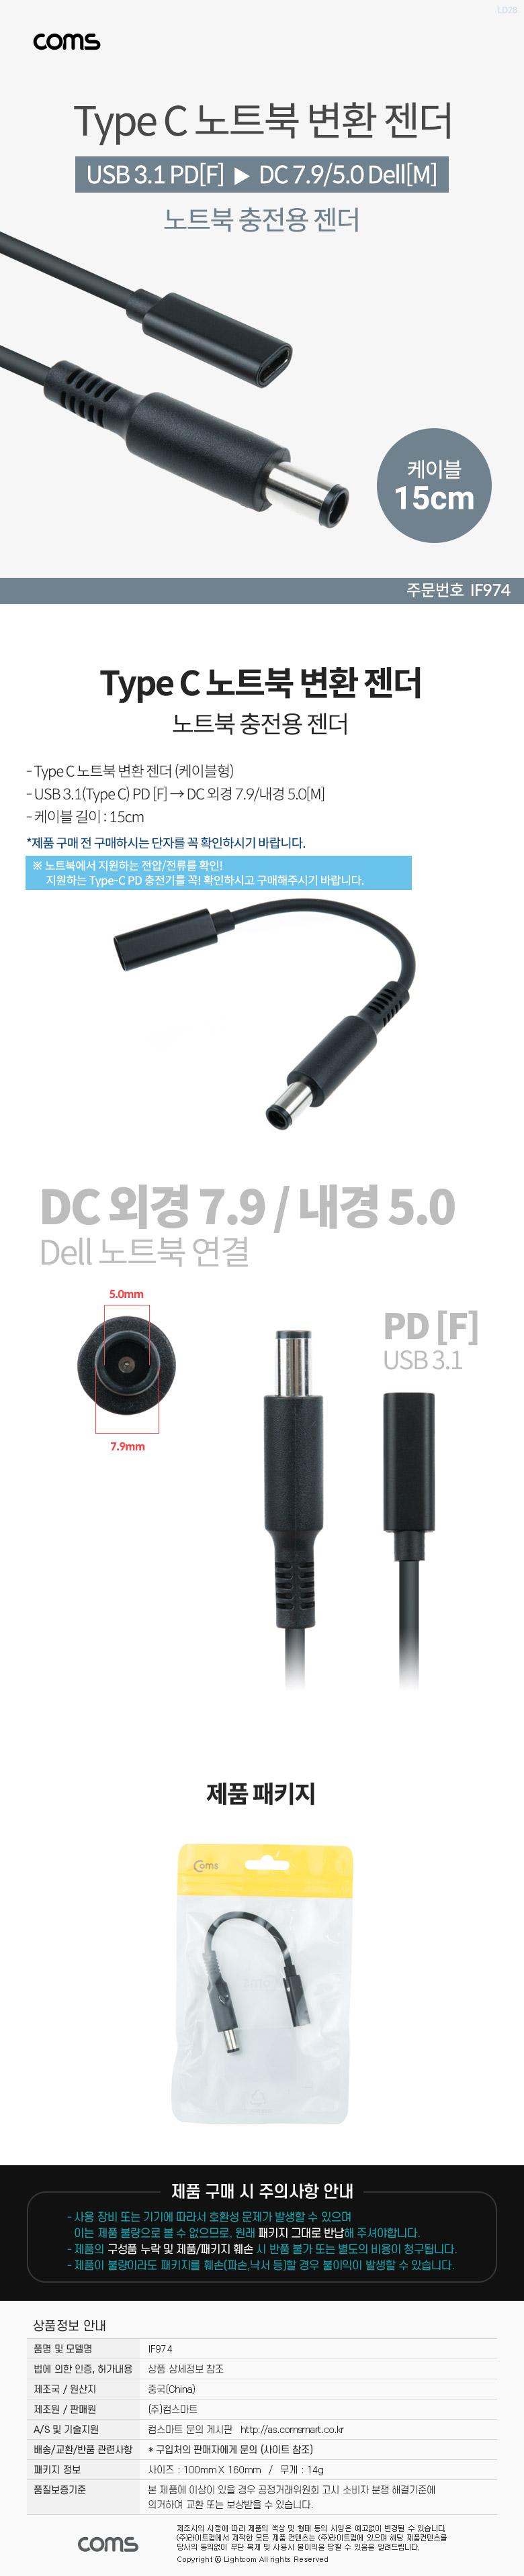 Coms USB 3.1 Type C Ʈ ȯ  ̺ 15cm PD to DC 7.9 5.0 Dell  Ʈ  Ʈ   Ʈ Ʈ ȯ ƮϺȯ ȯ